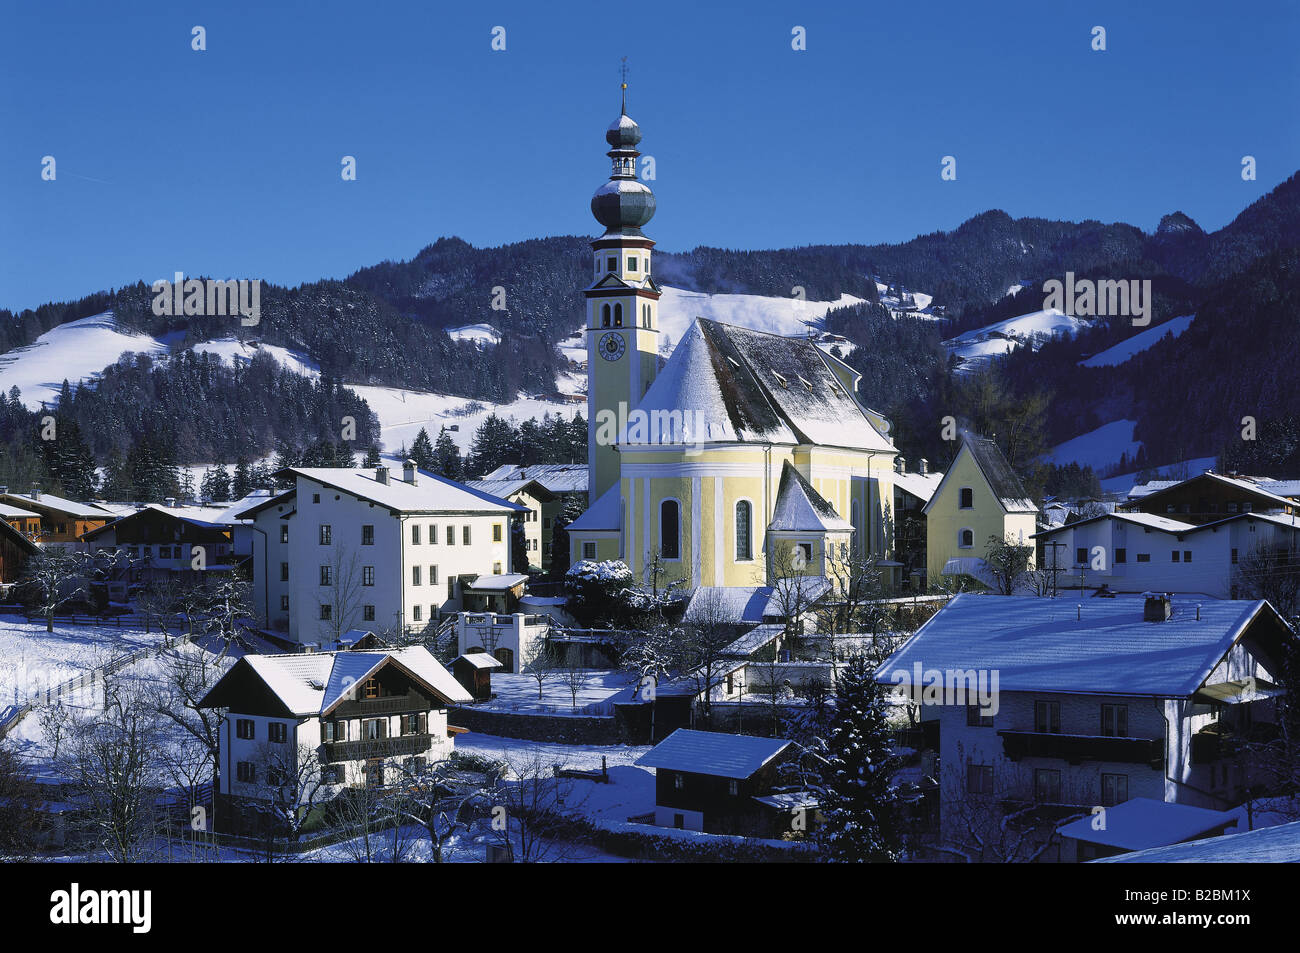 Reith im Alpbachtal Tirol Austria Foto Stock